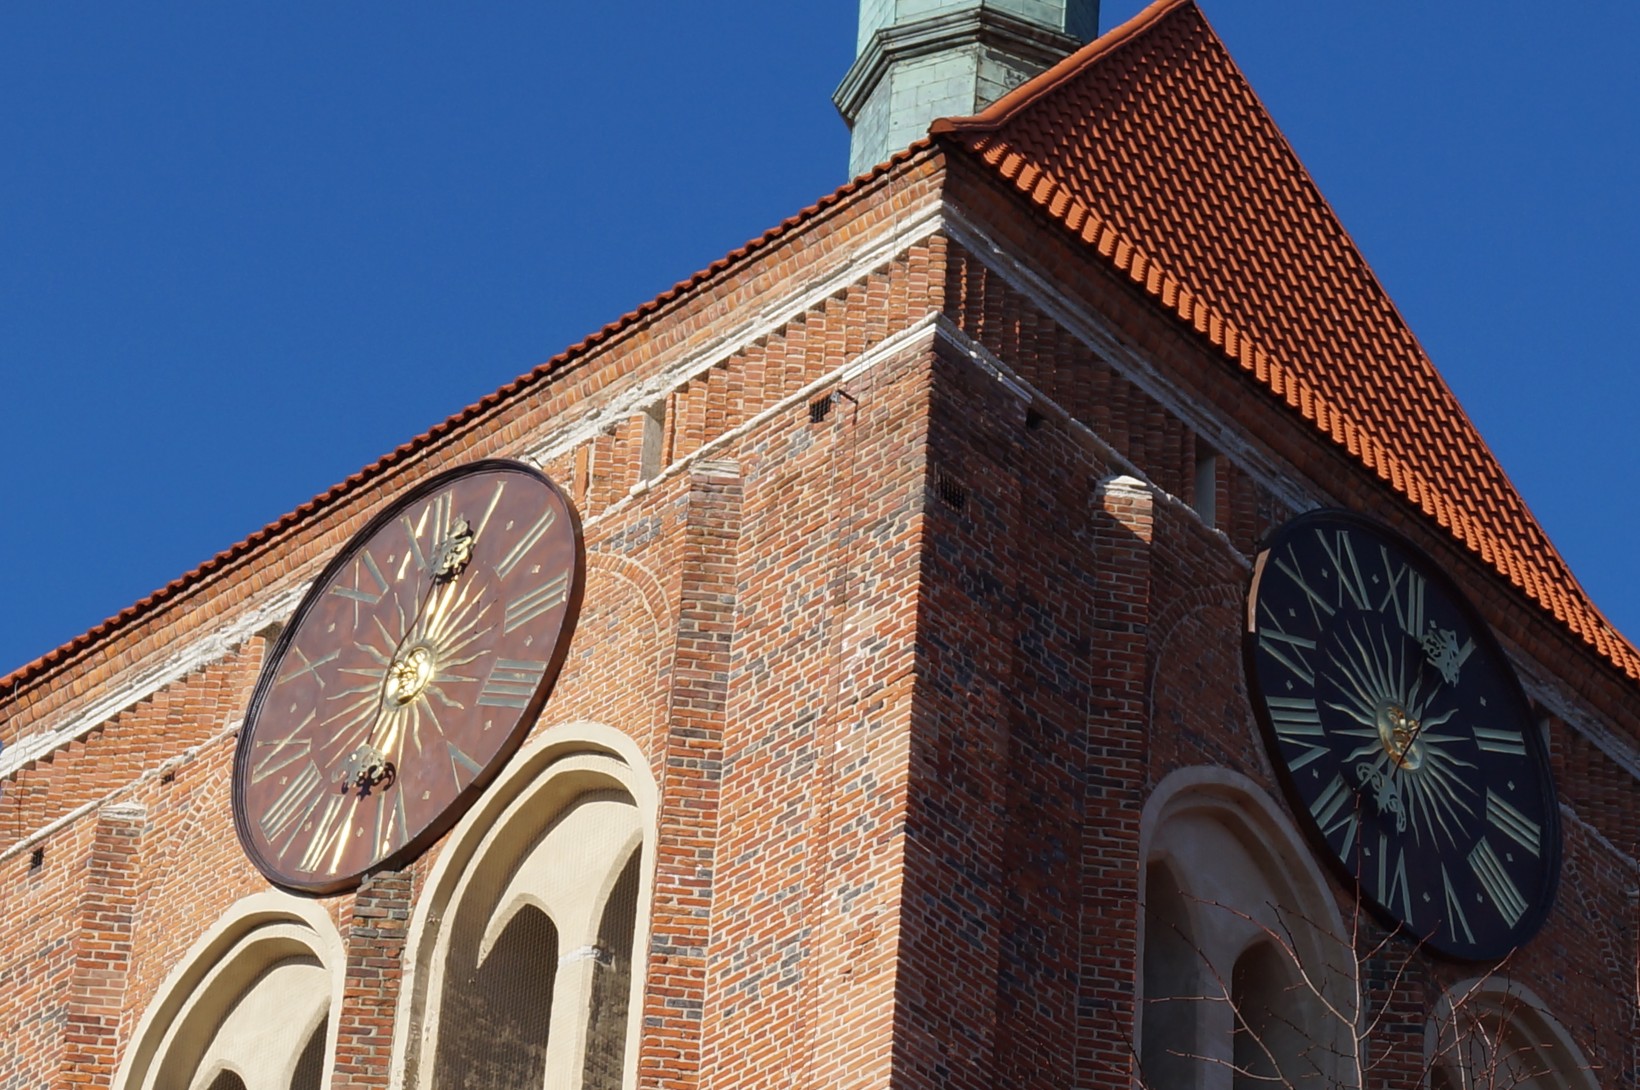 zdjęcie fragmentu wieży centrum sw. Jana w Gdańsku, ceglany zabytek, odrestaurowane zegary